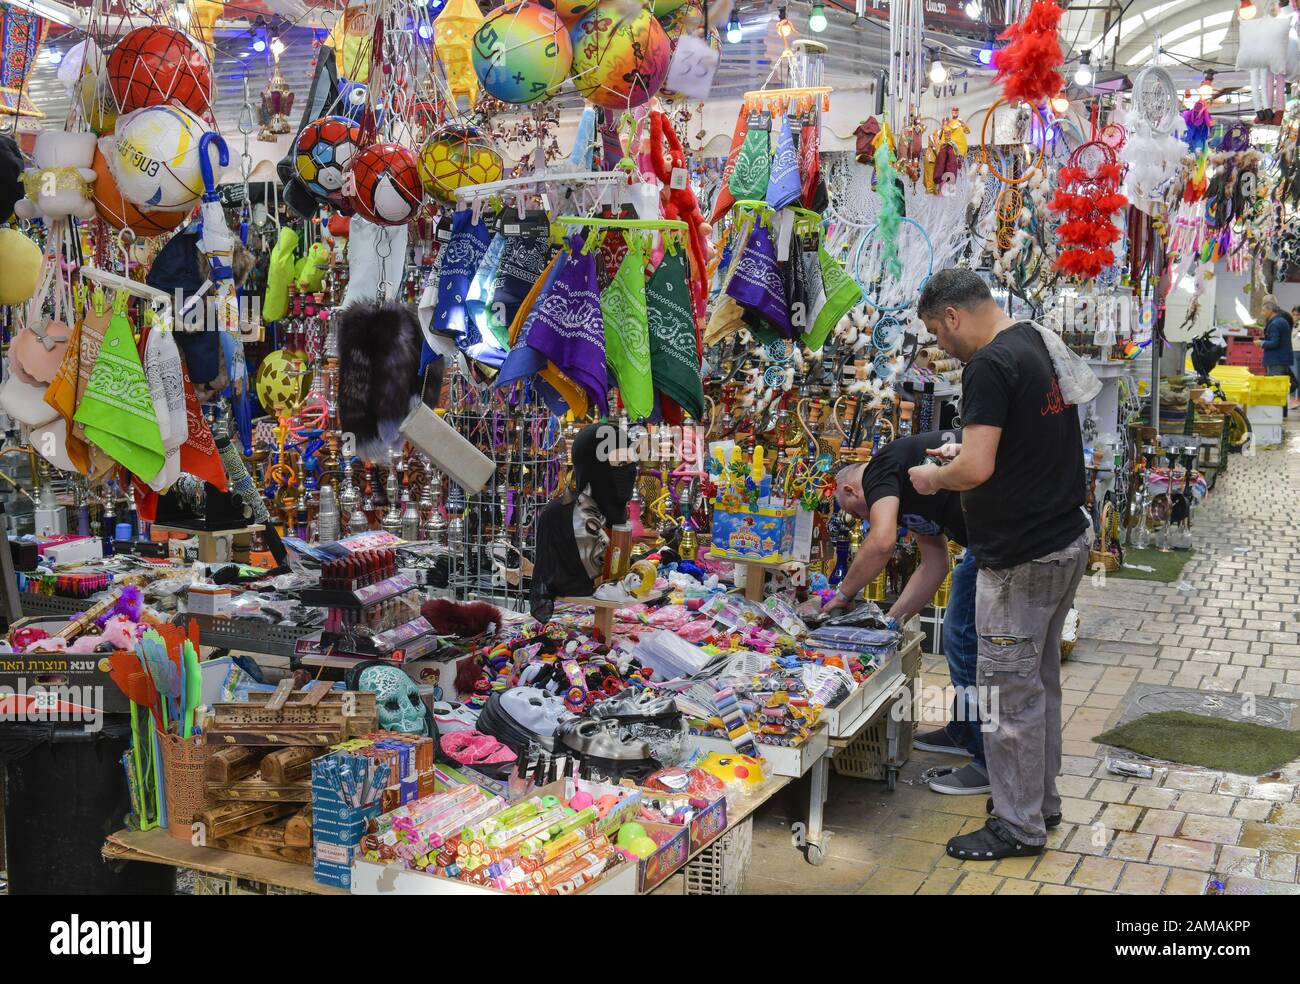 Kinderspielzeug, Marktstand, Souk, Altstadt, Akko, Israel Stock Photo